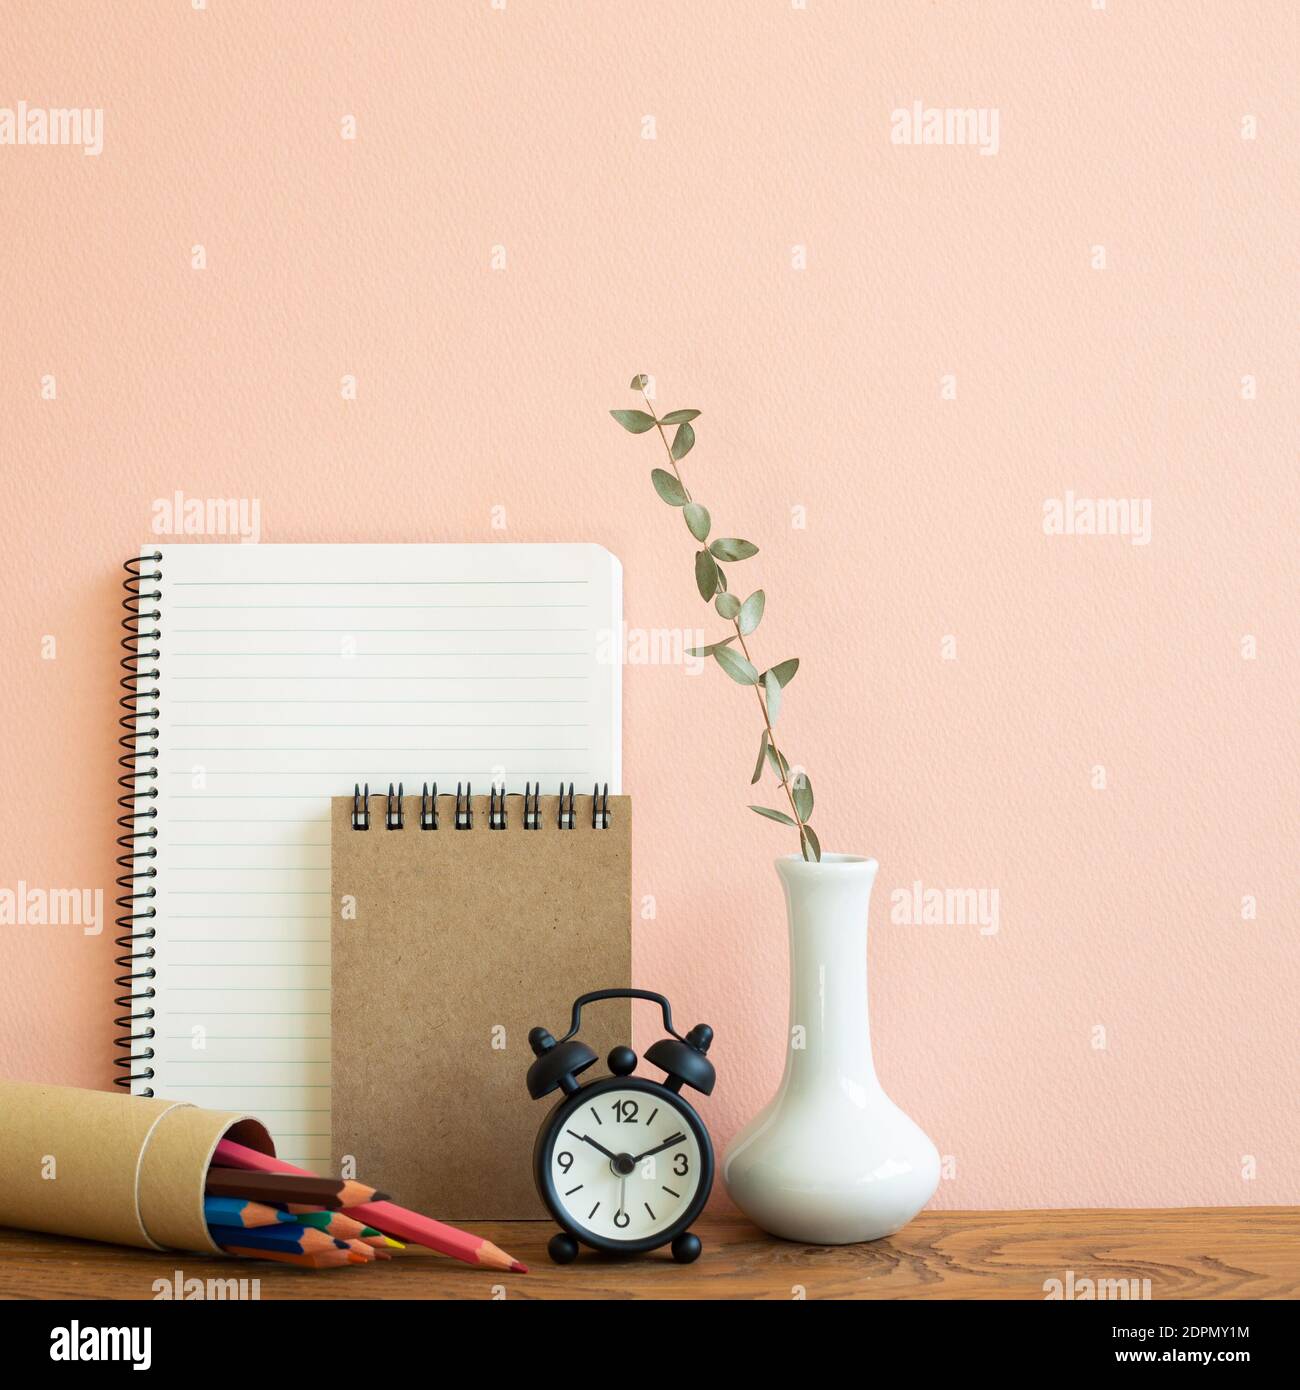 Carnet, horloge, crayons avec vase d'eucalyptus sur table en bois. Fond rose. Lieu de travail et d'étude Banque D'Images